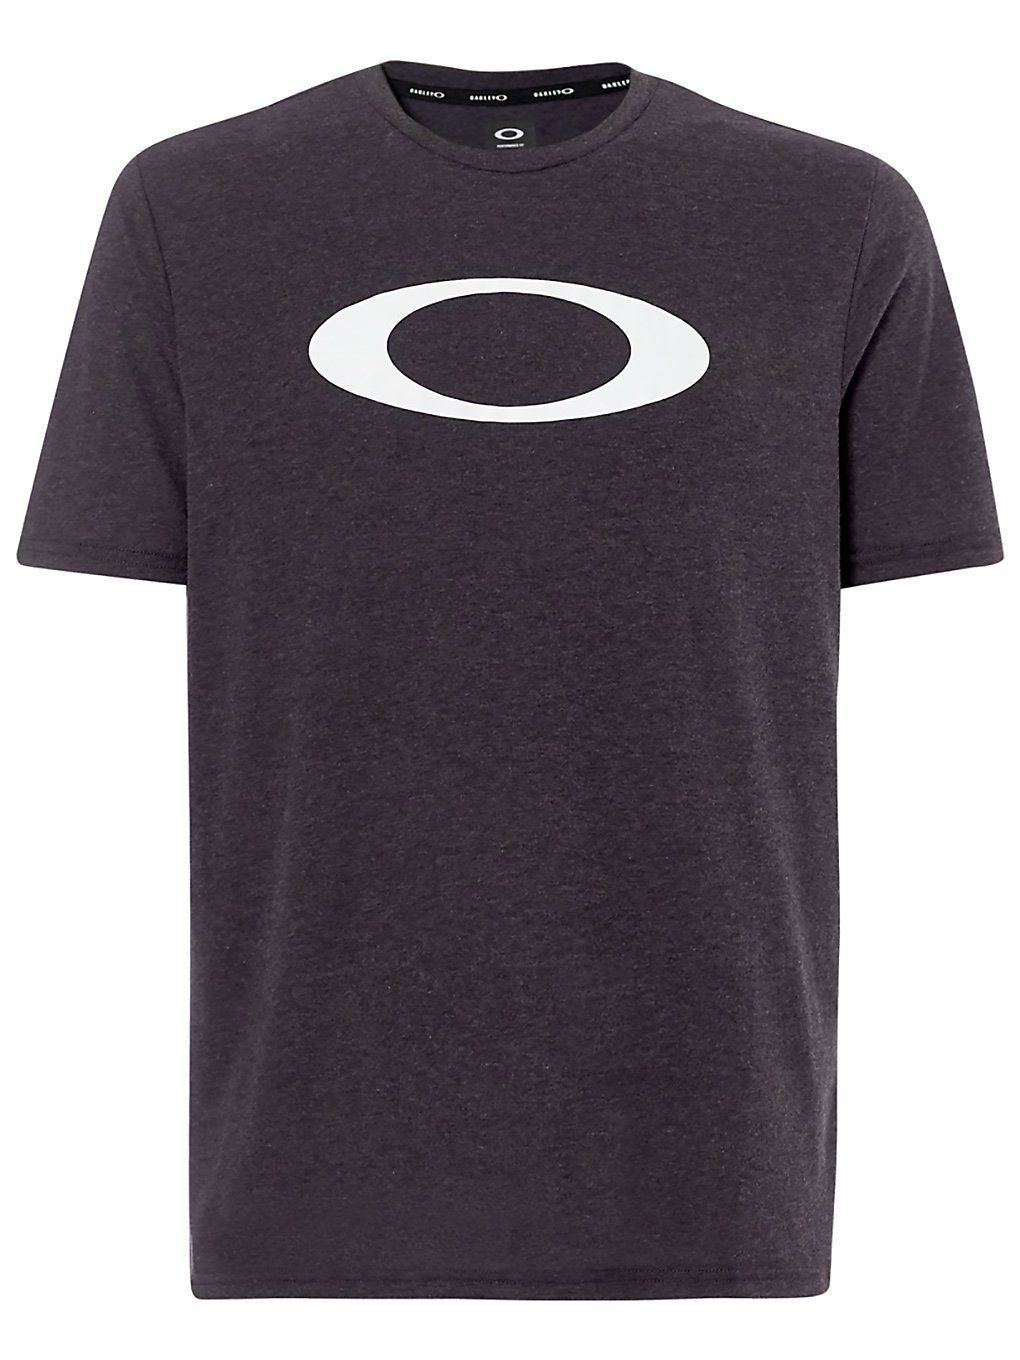 Oakley o-bold ellipse t-shirt musta, oakley